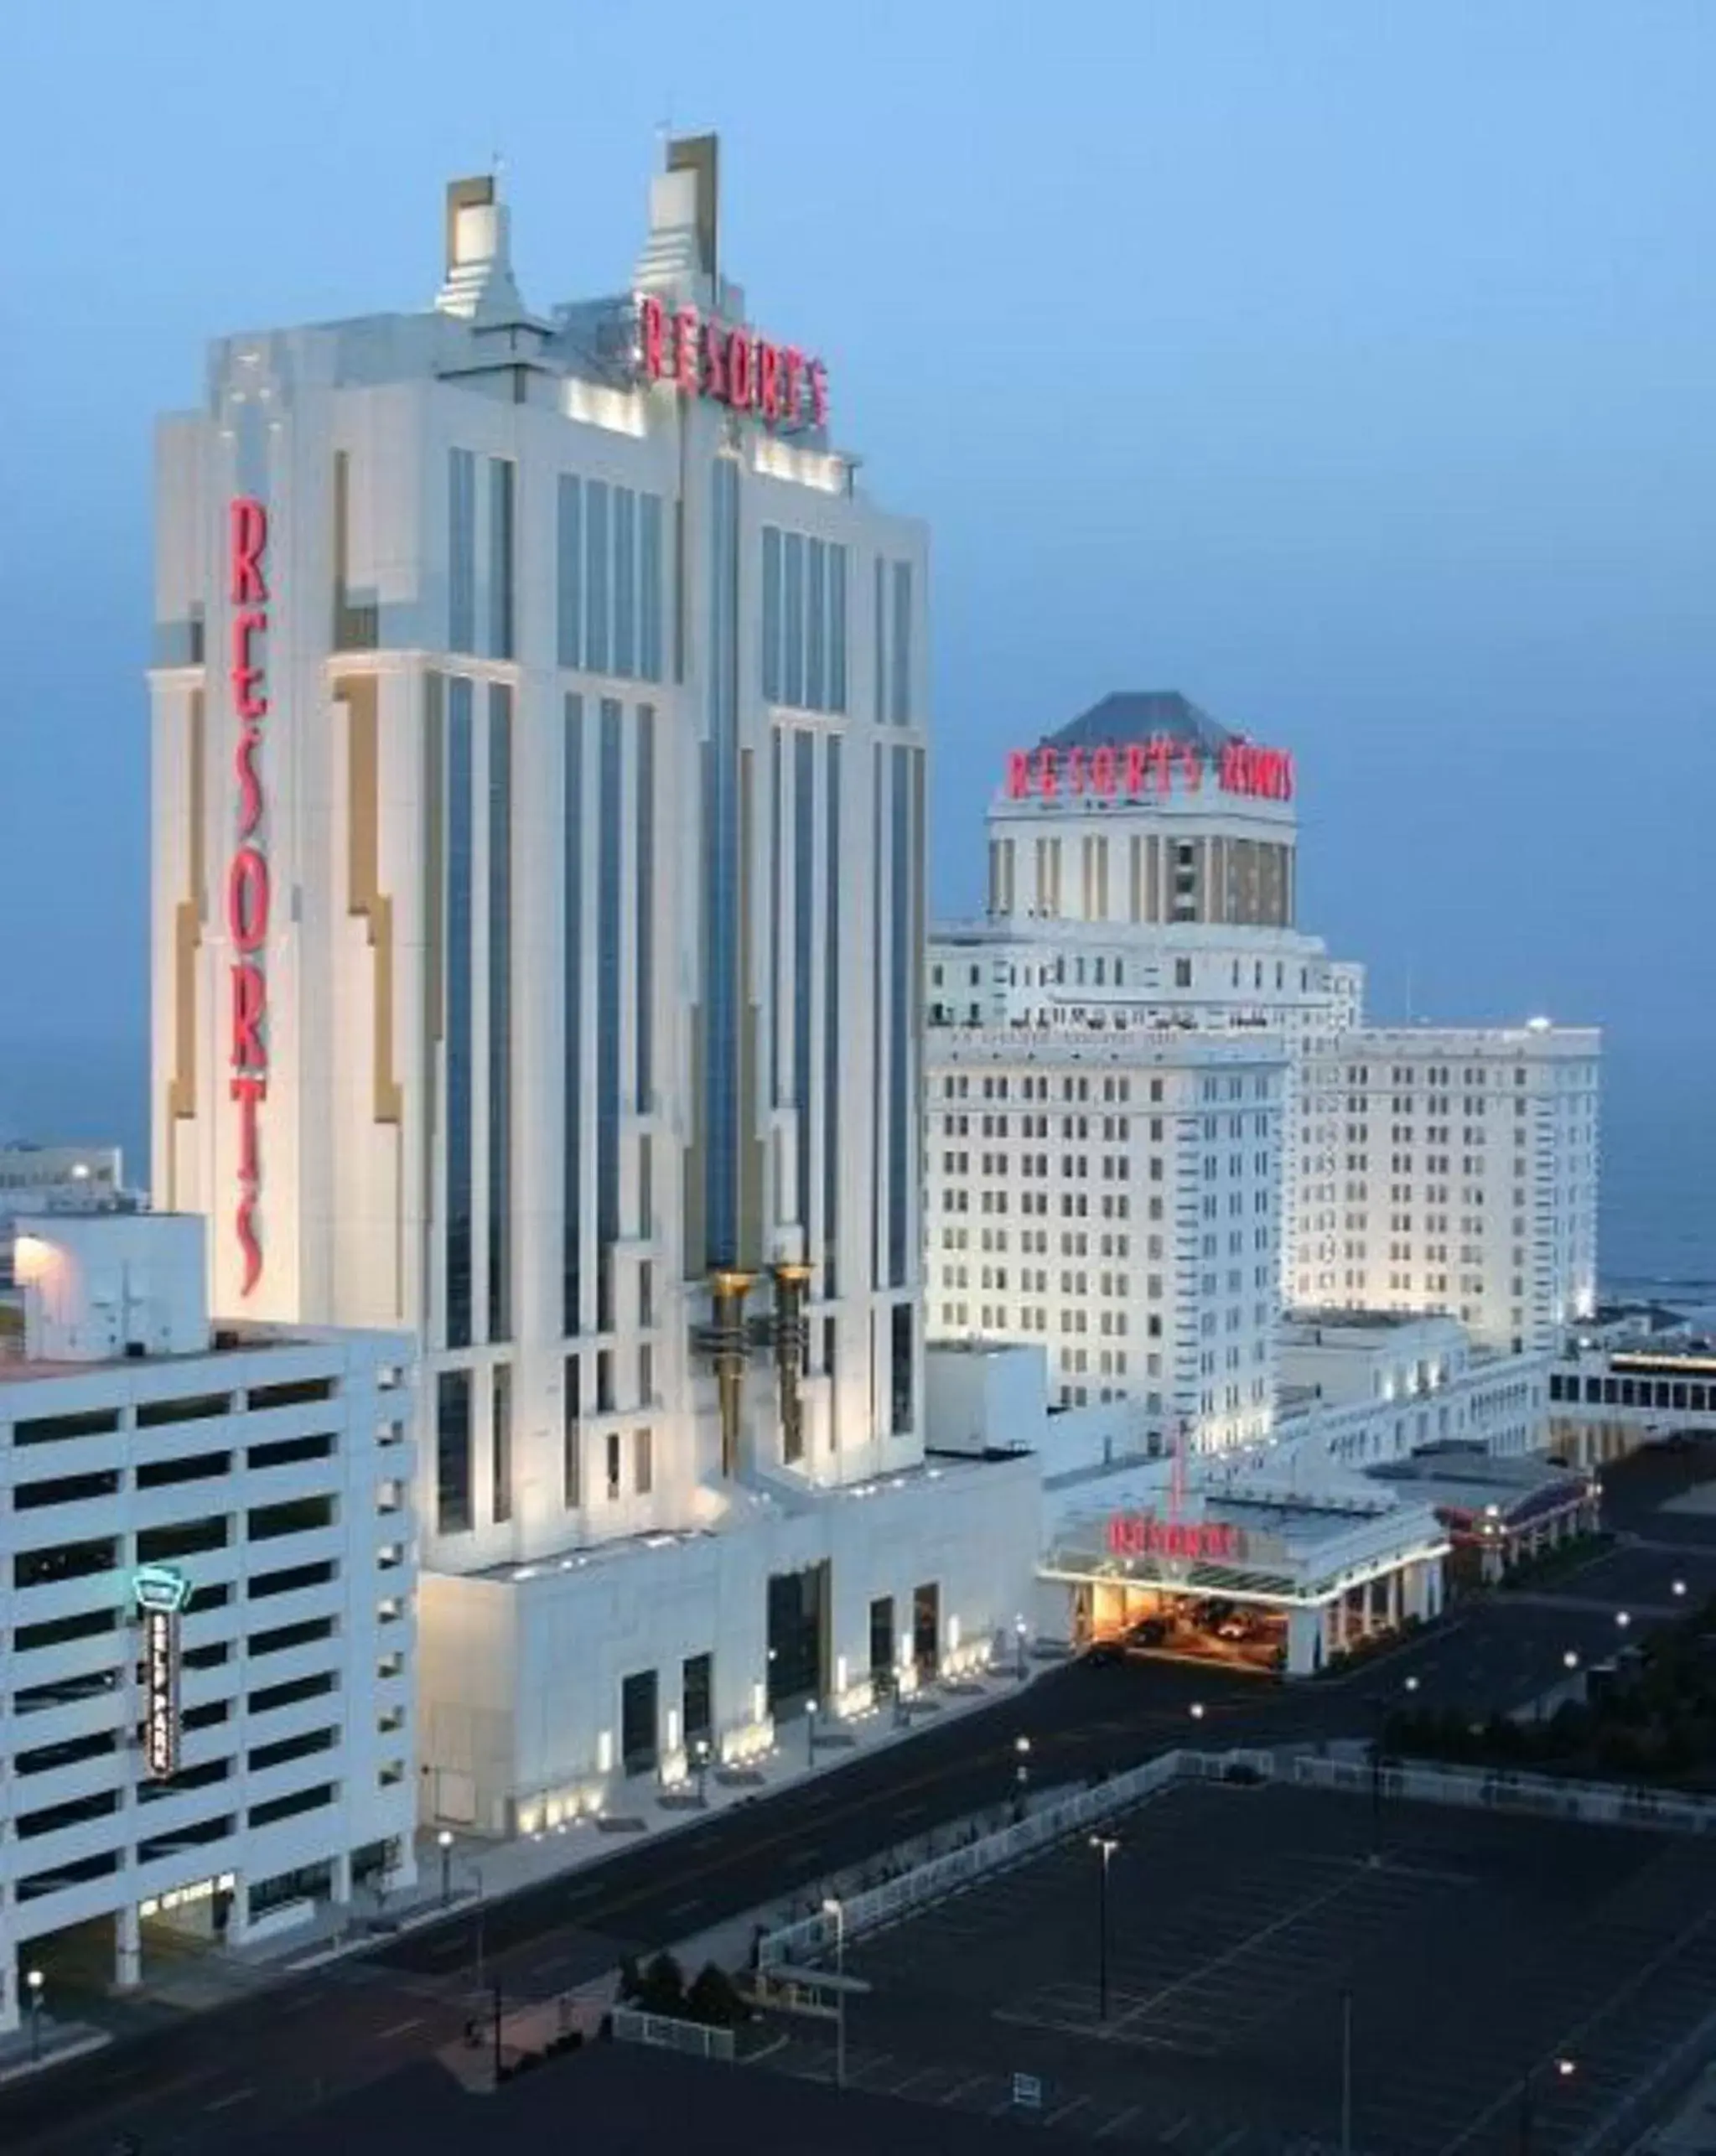 Facade/entrance in Resorts Casino Hotel Atlantic City